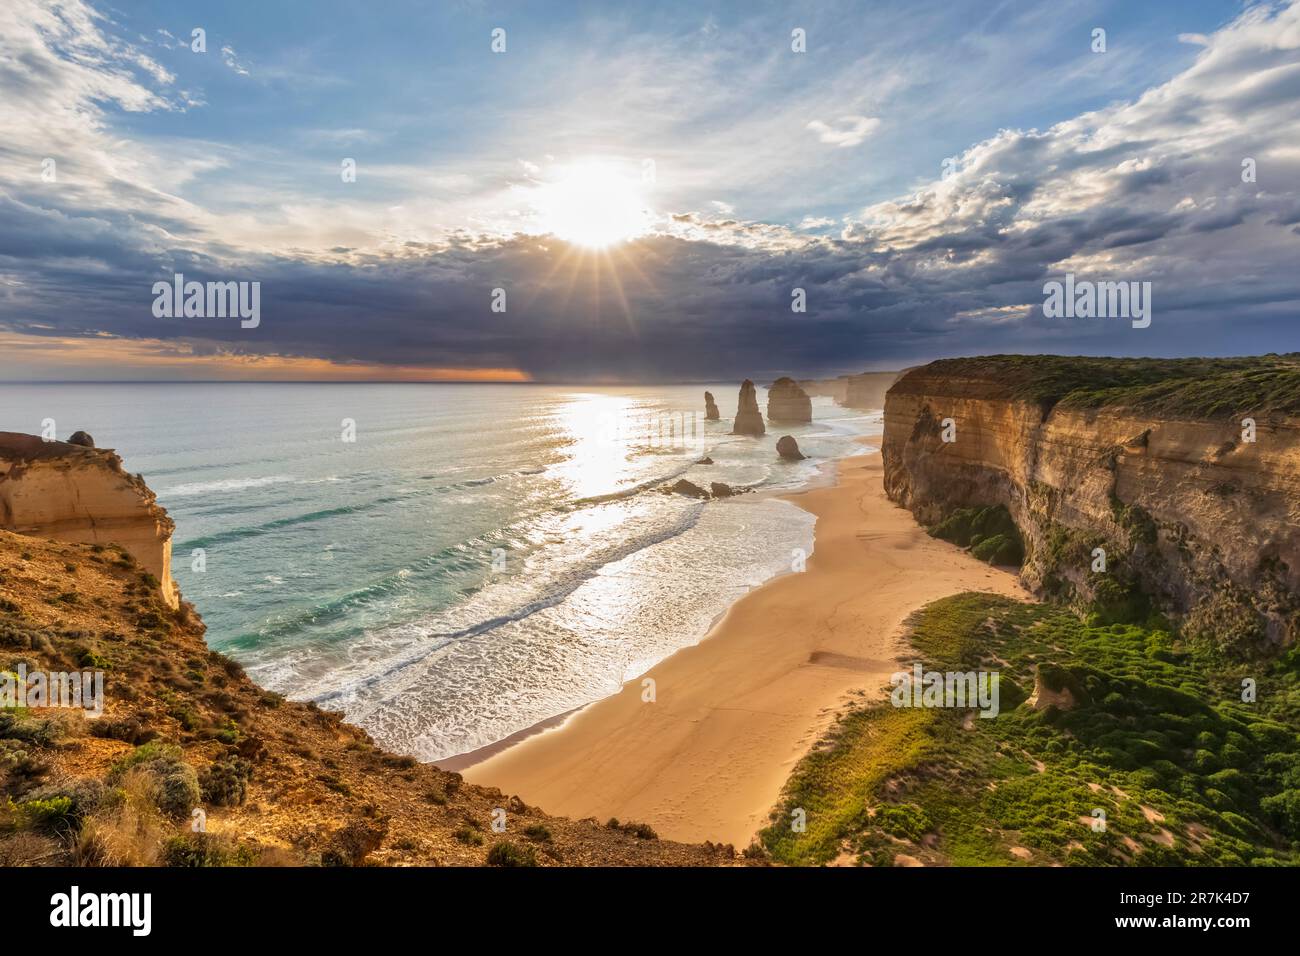 Australia, Victoria, Vista del sole che splende attraverso le nuvole di tempesta sulla spiaggia sabbiosa nel Parco Nazionale di Port Campbell con dodici Apostoli sullo sfondo Foto Stock